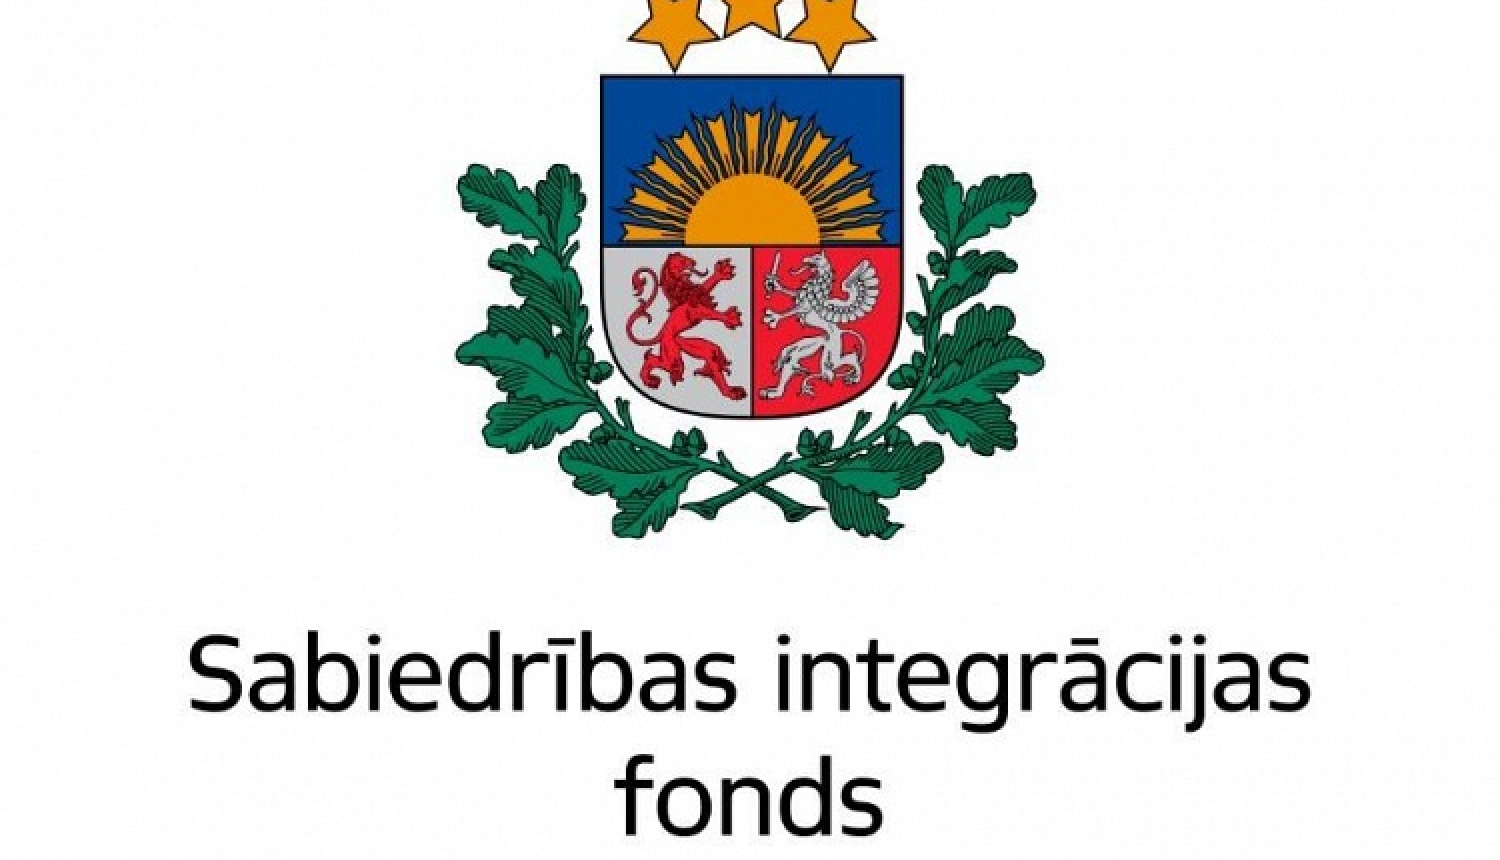 Valdība apstiprina Sabiedrības integrācijas fonda nolikumu